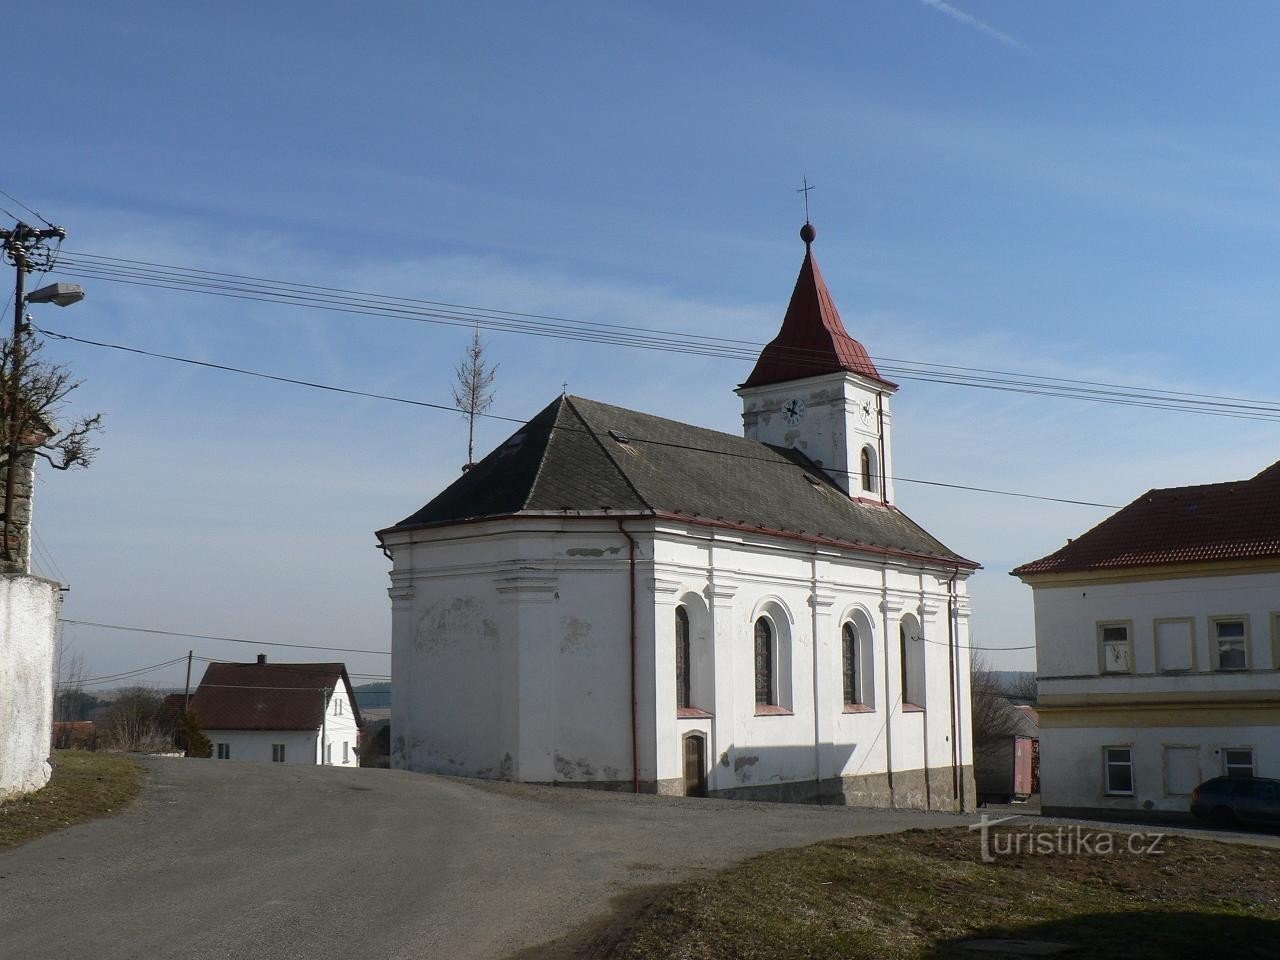 Velenovy, kirken St. Jan Nepomucký